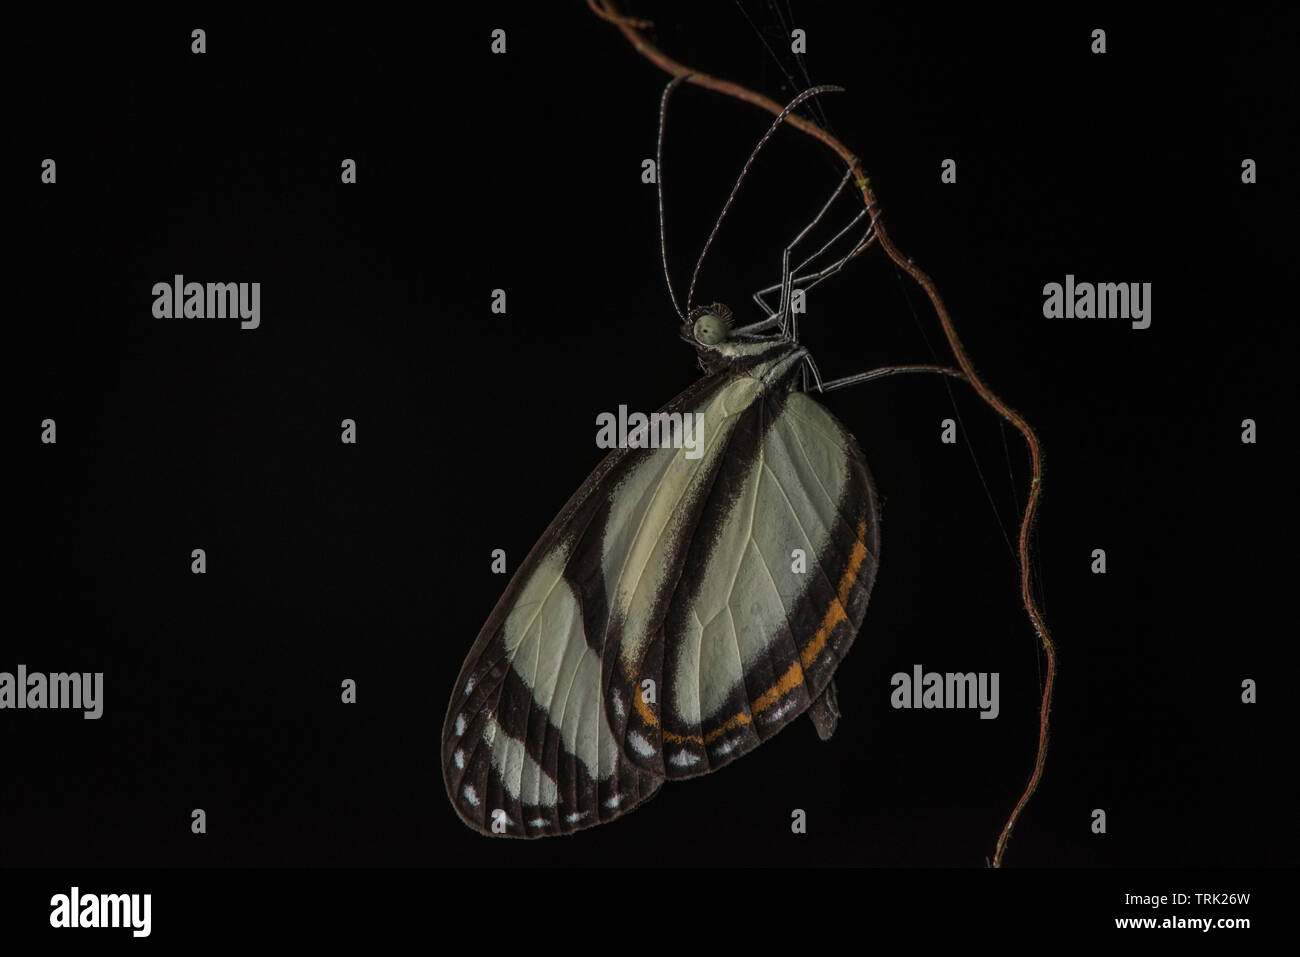 Orejas de mariposa fotografías e imágenes de alta resolución - Alamy